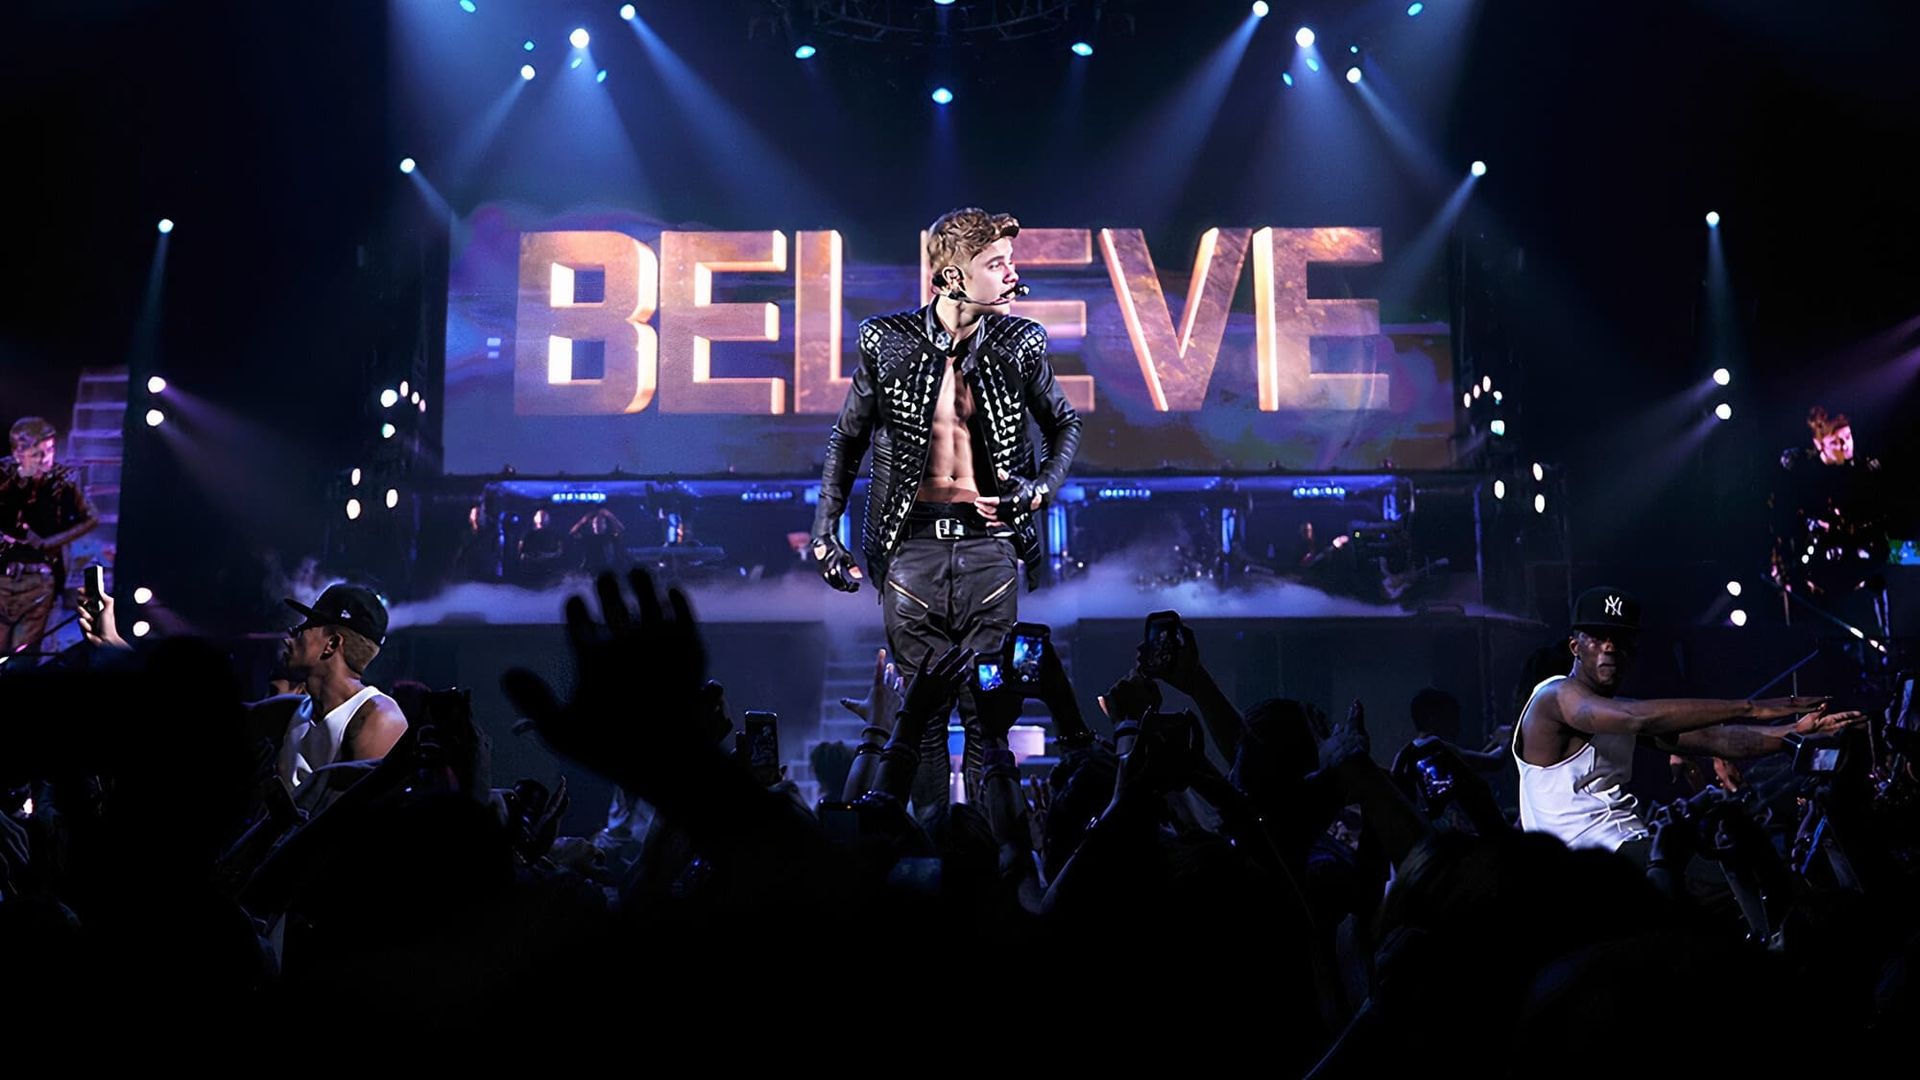 Justin Bieber's Believe background